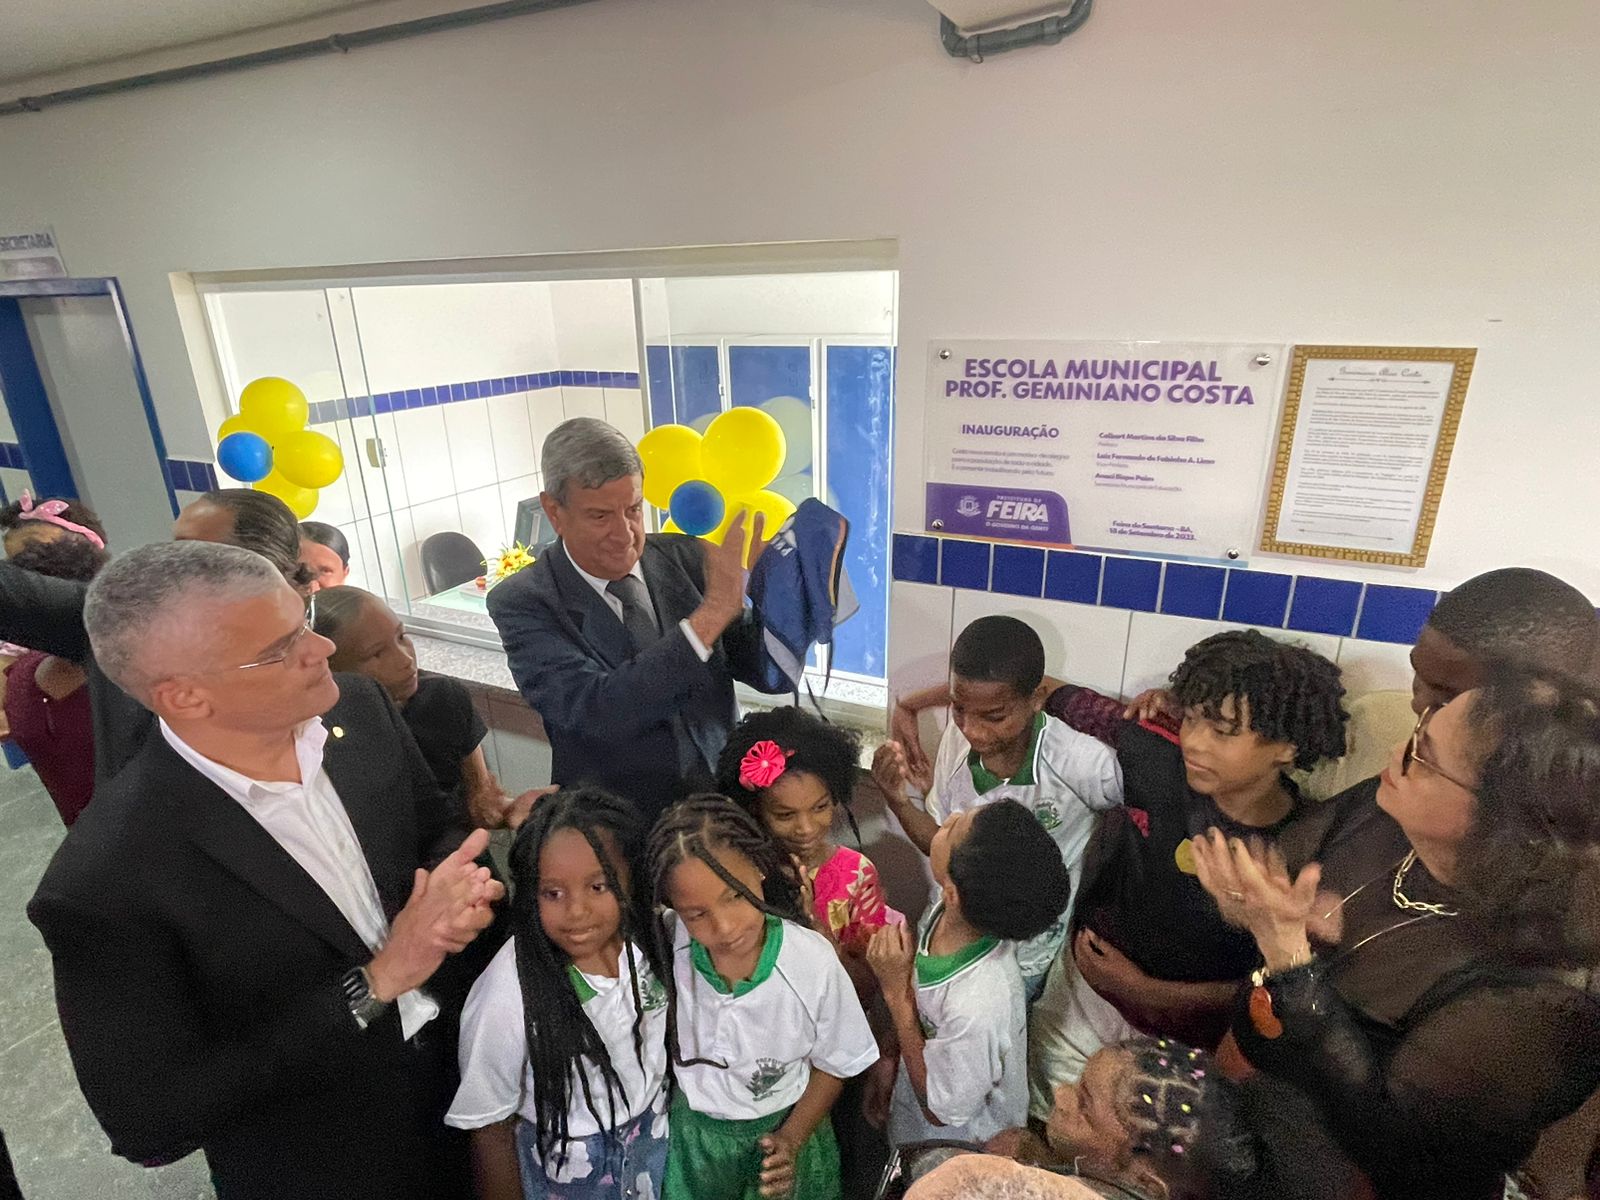 Prefeitura inaugura duas novas escolas municipais em comemoração aos 190 anos de Feira